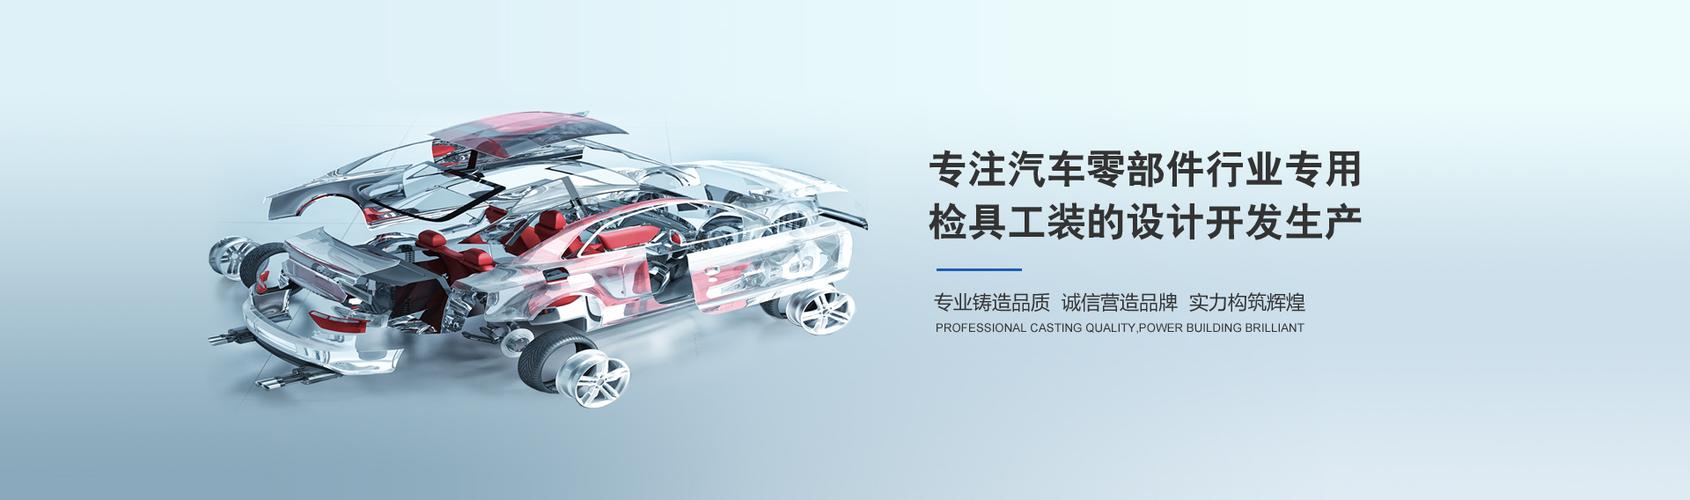 全通汽车装备科技江阴是一家专业设计开发生产汽车零部件行业